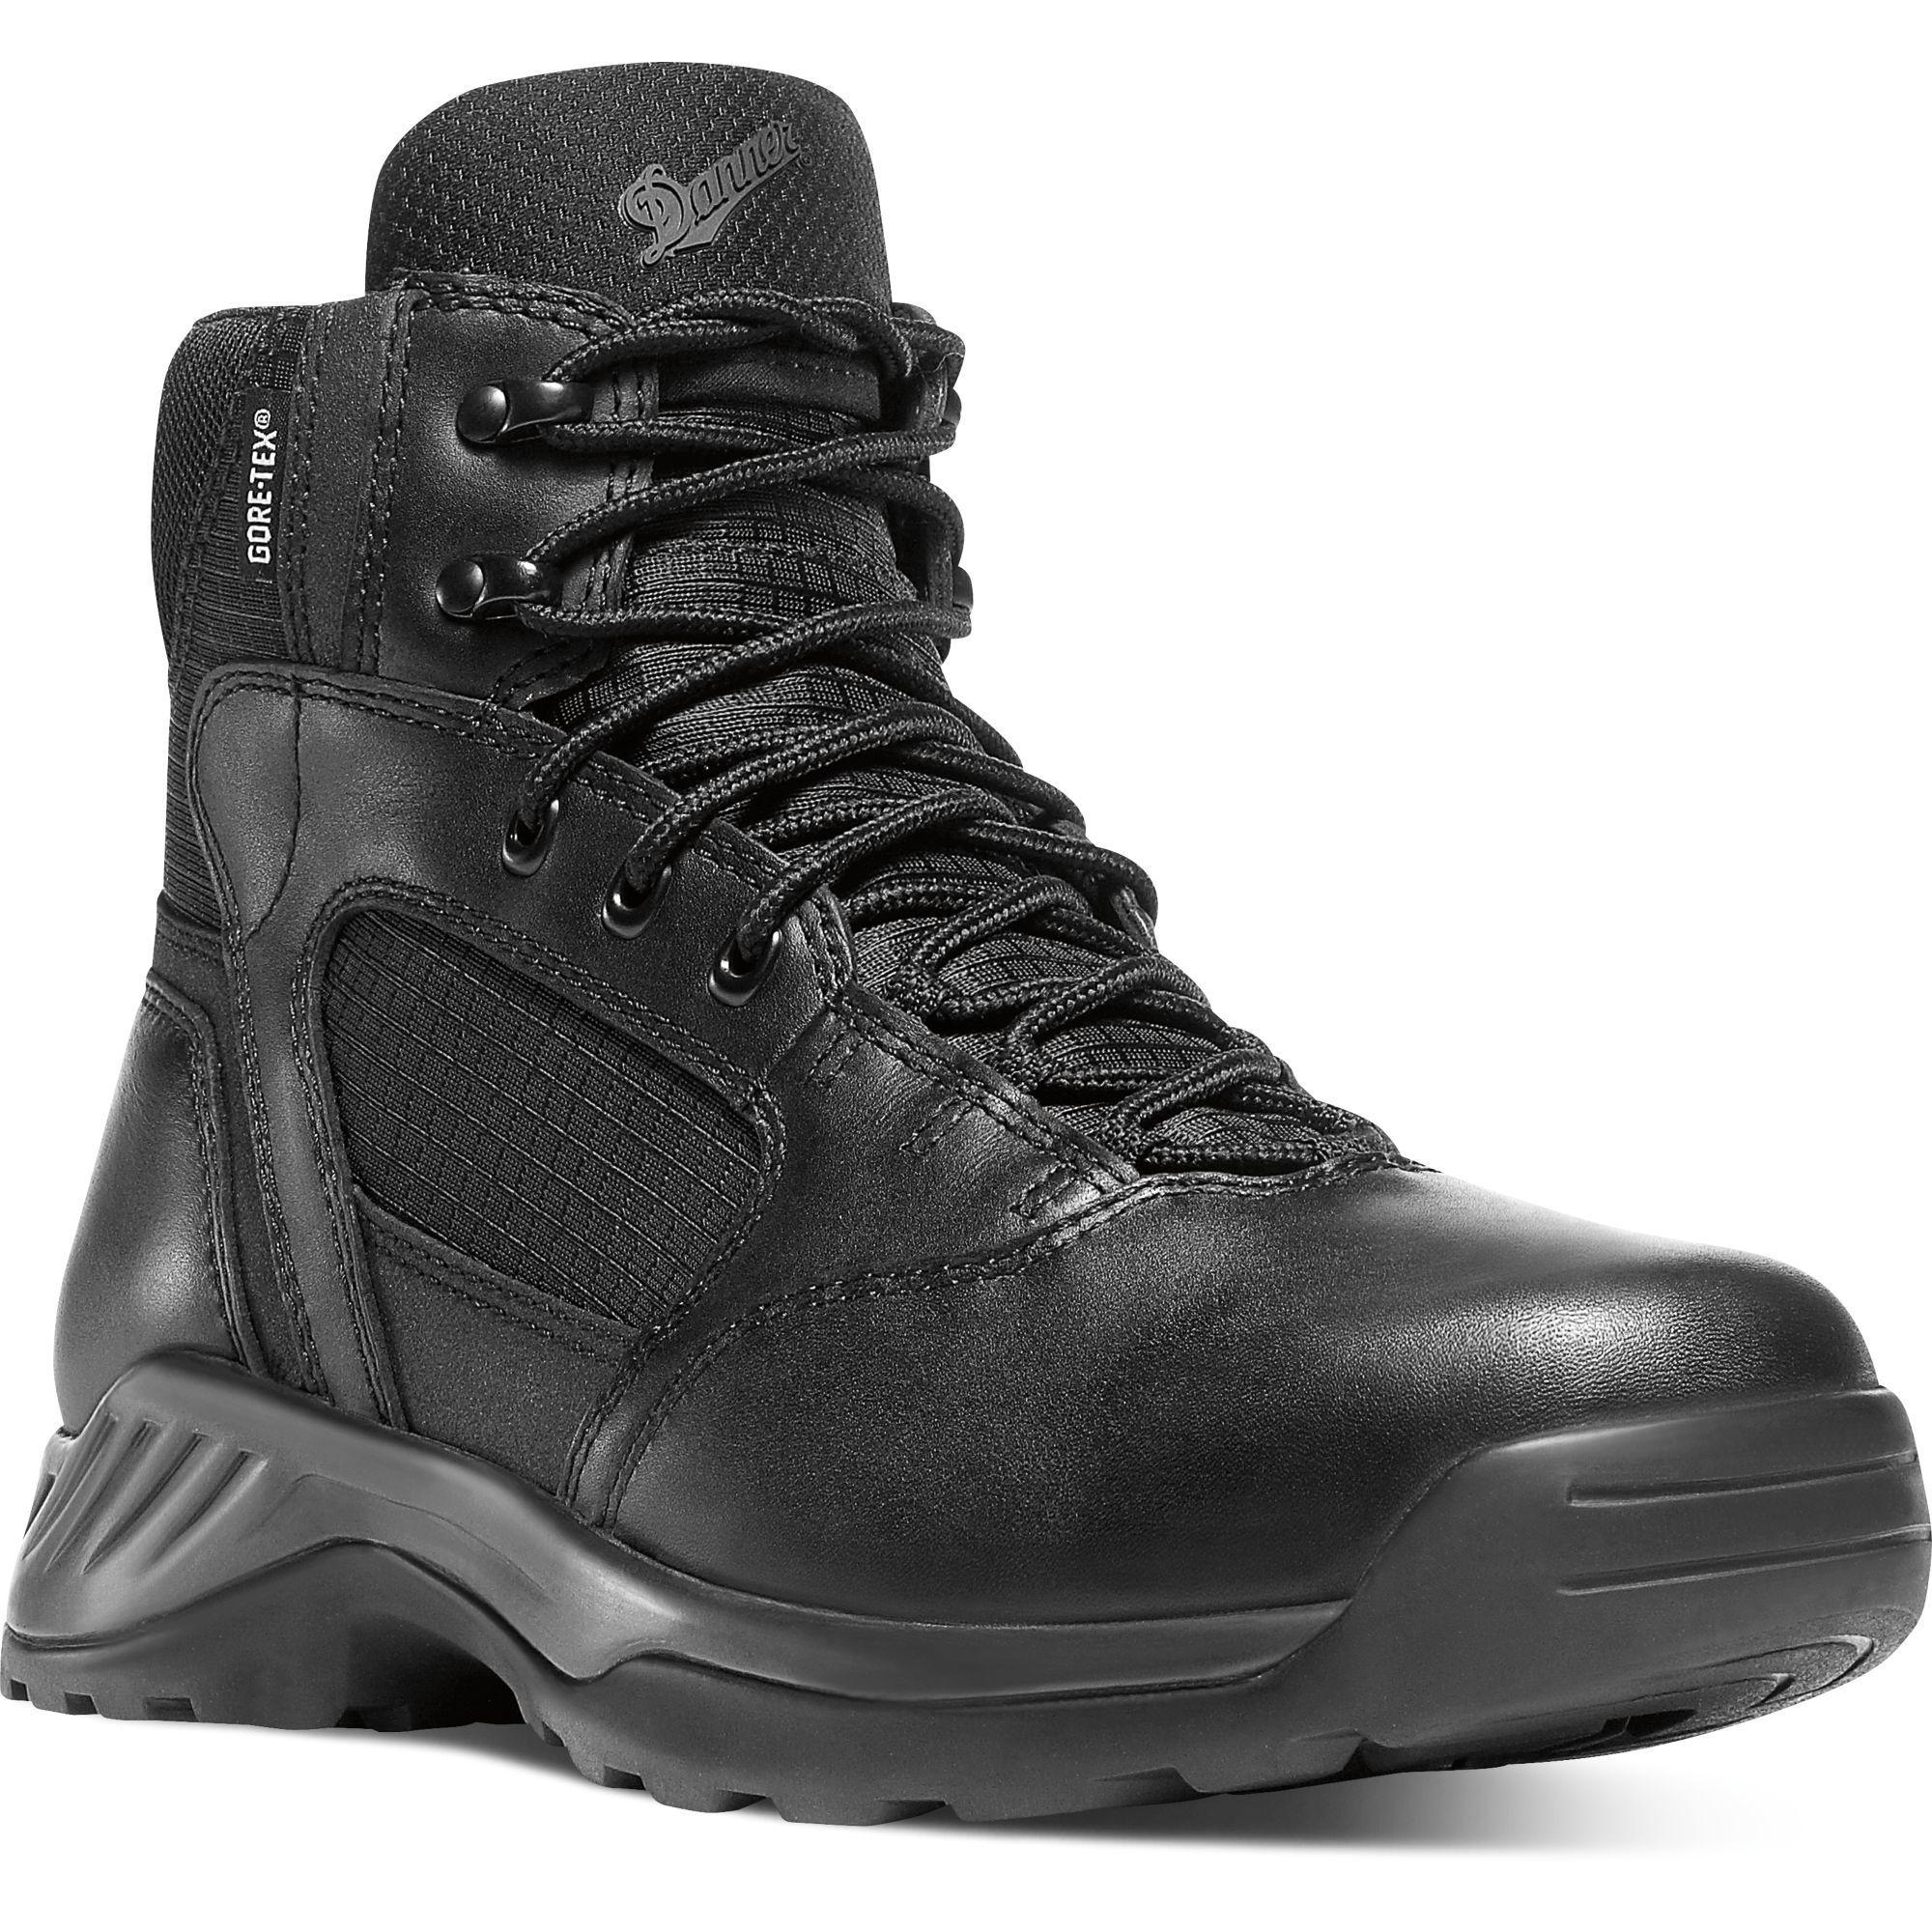 Danner Men's Kinetic 6" Side Zip Waterproof Duty Boot - Black - 28017 7 / Medium / Black - Overlook Boots